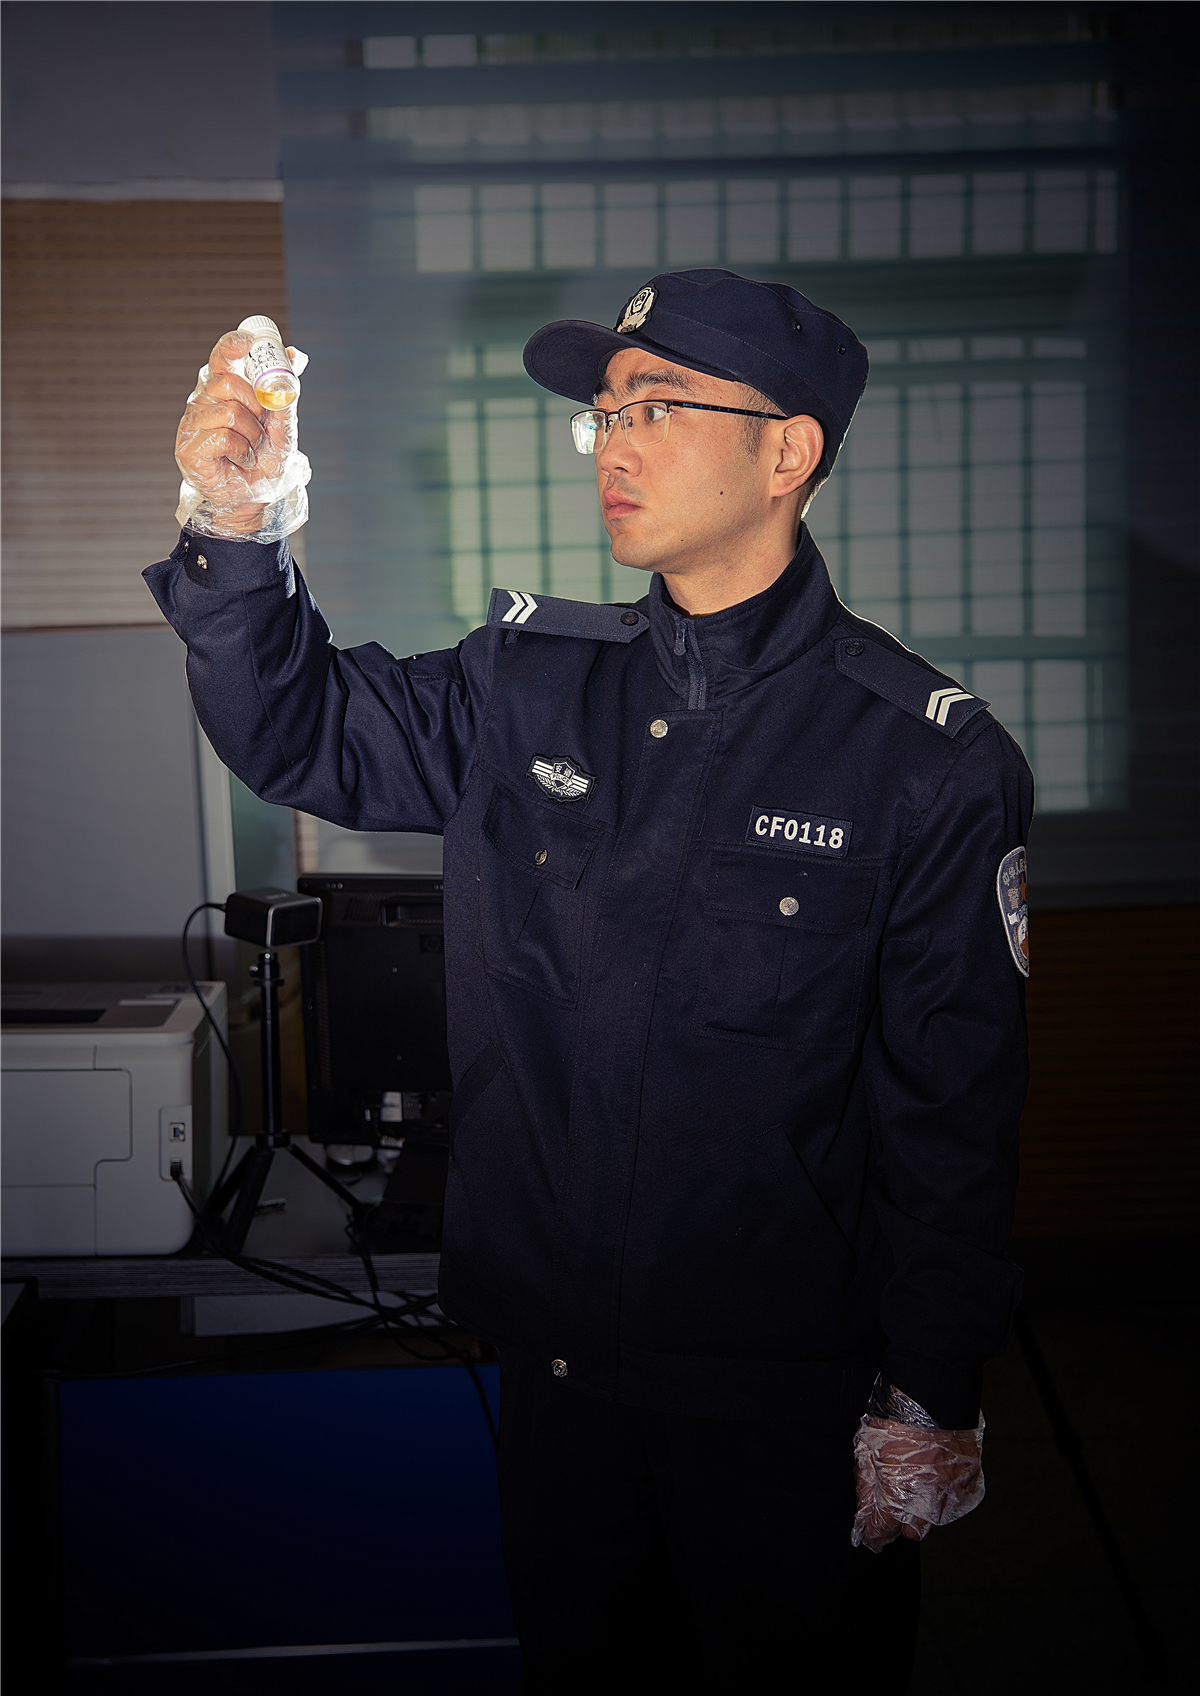 陶涛,2009年1月参加公安工作,现任长丰县公安局水家湖派出所辅警,从事